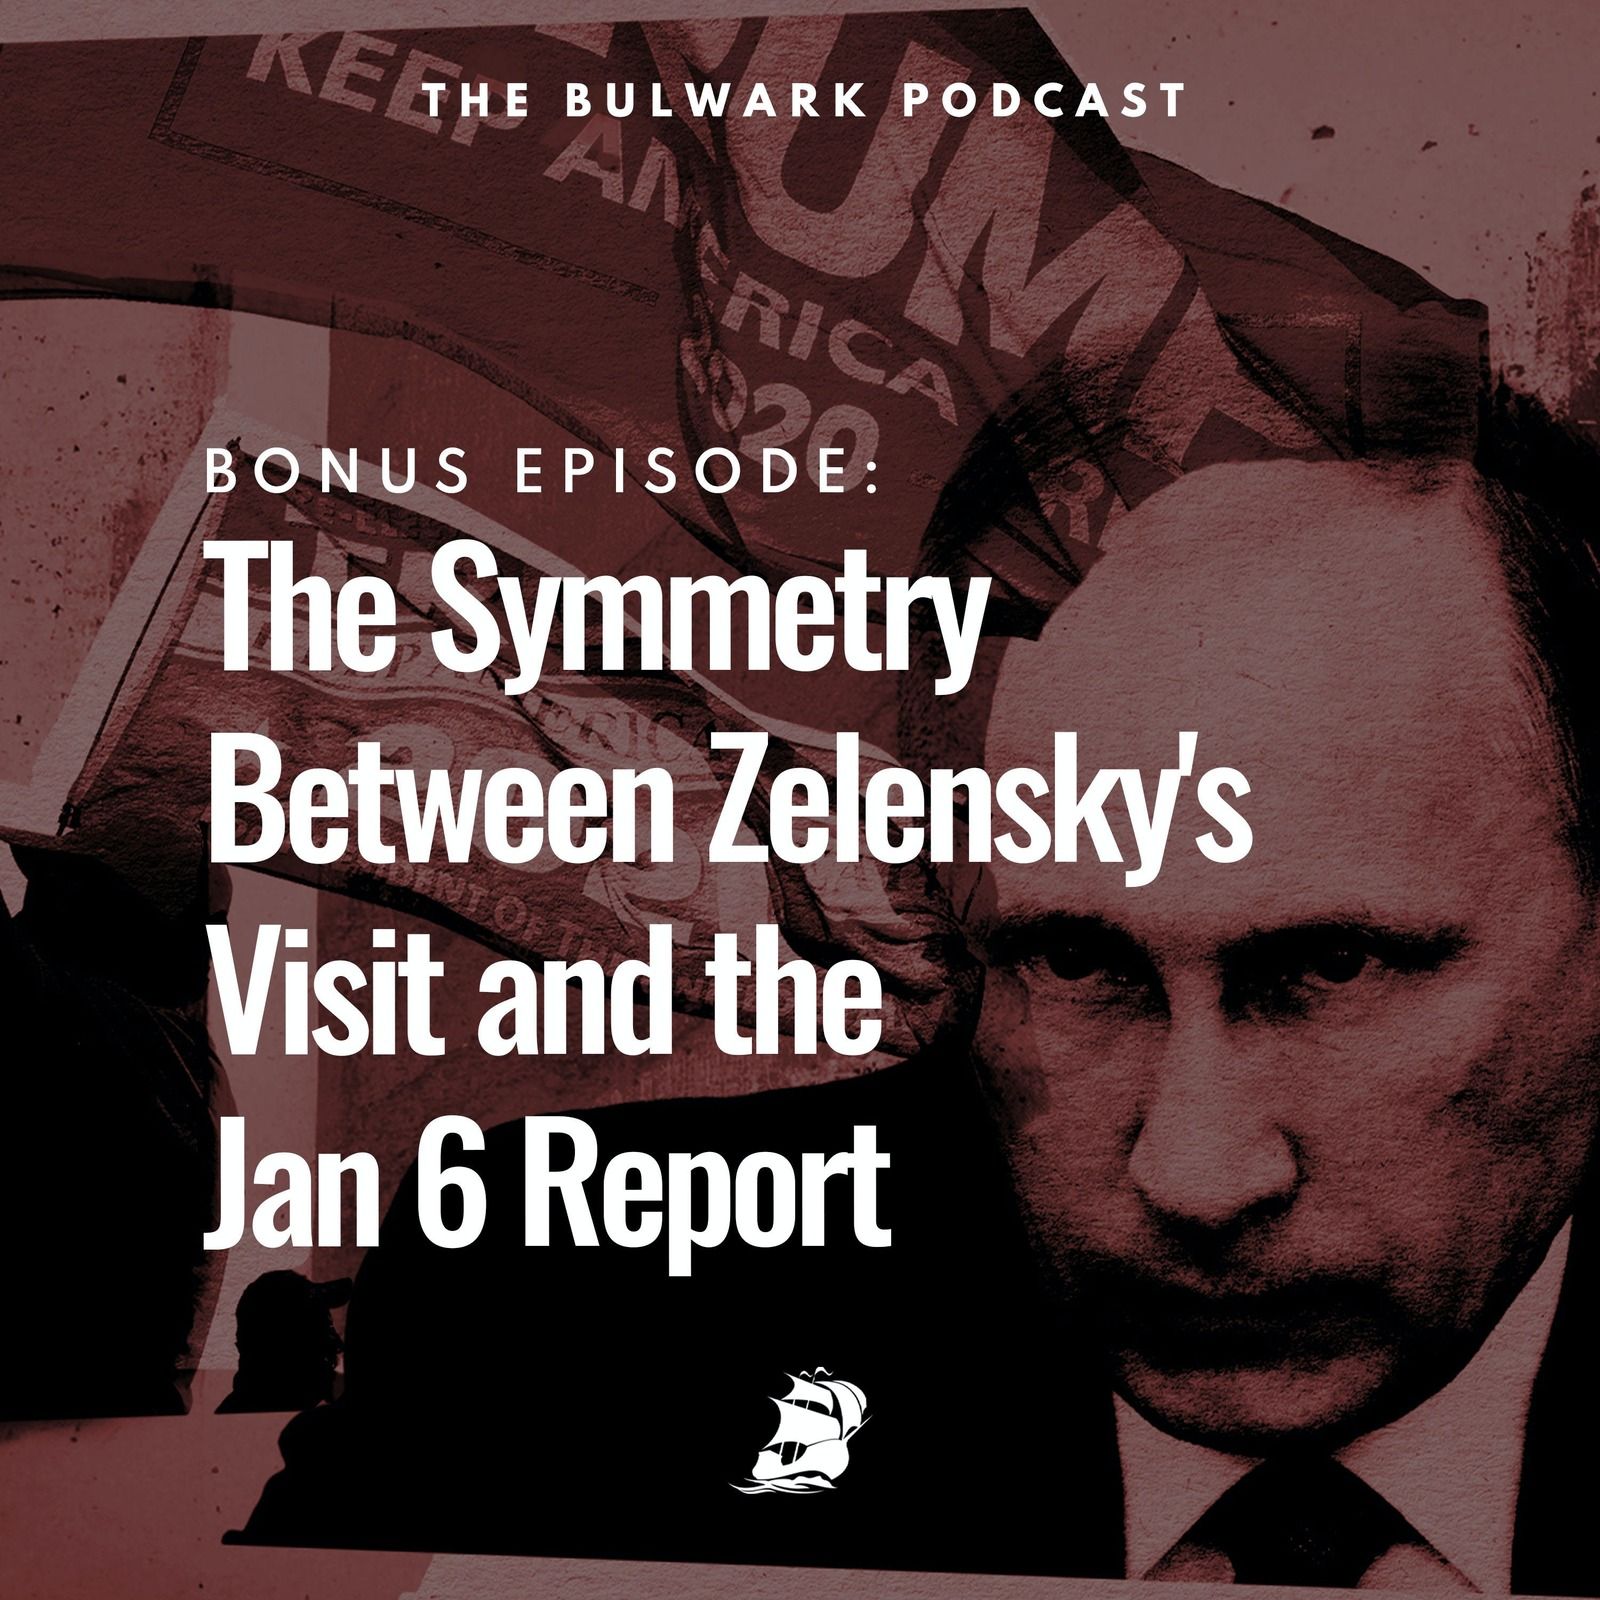 BONUS EPISODE: The Symmetry Between Zelensky's Visit and the Jan 6 Report